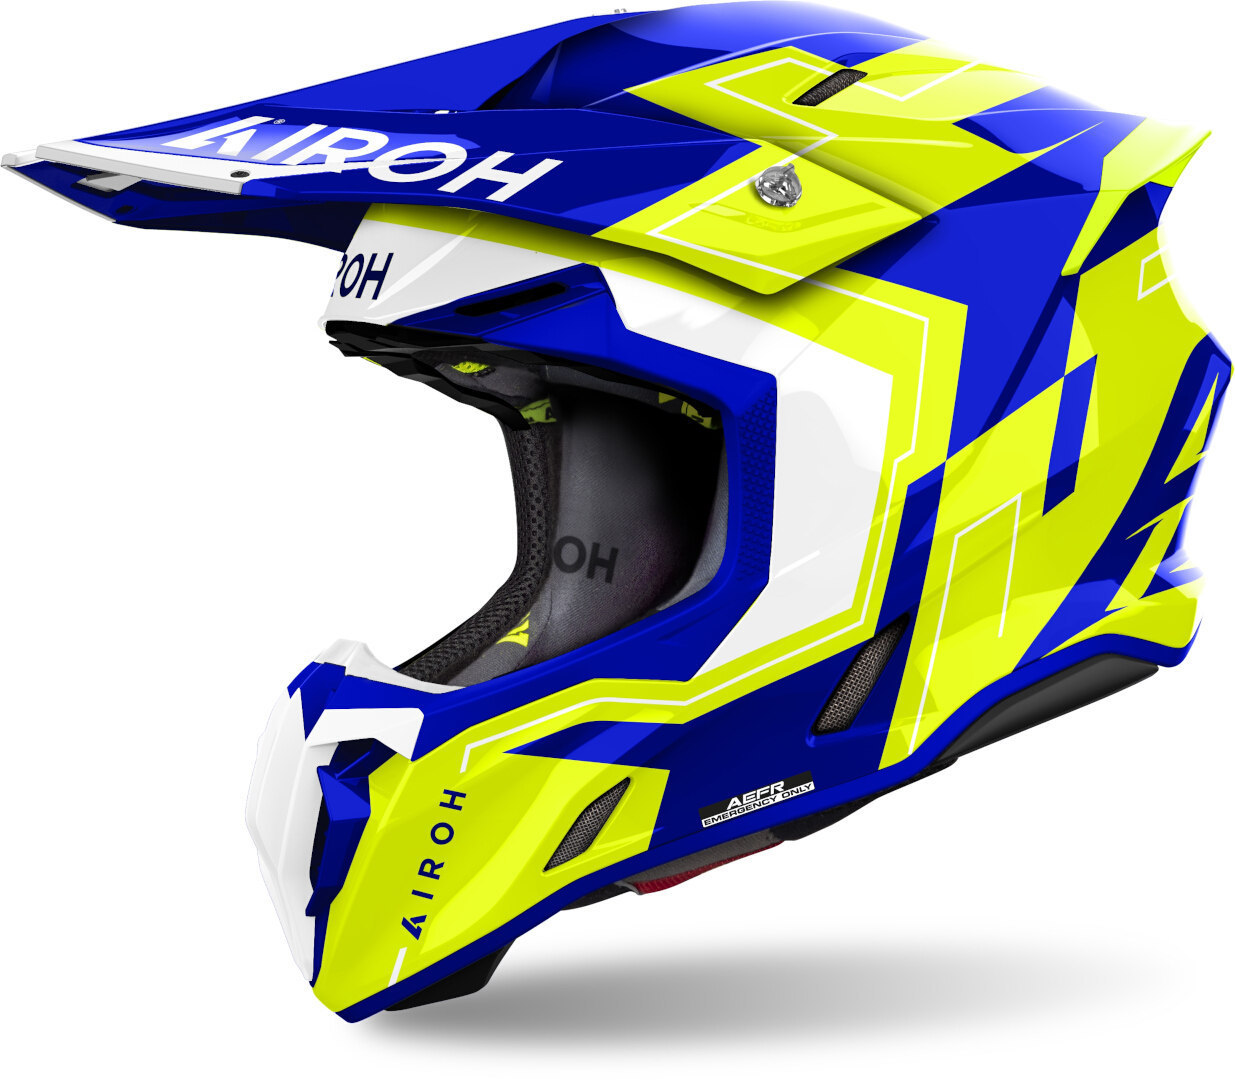 Airoh Twist 3 Dizzy Motocross Helm, blau-gelb, Größe XS